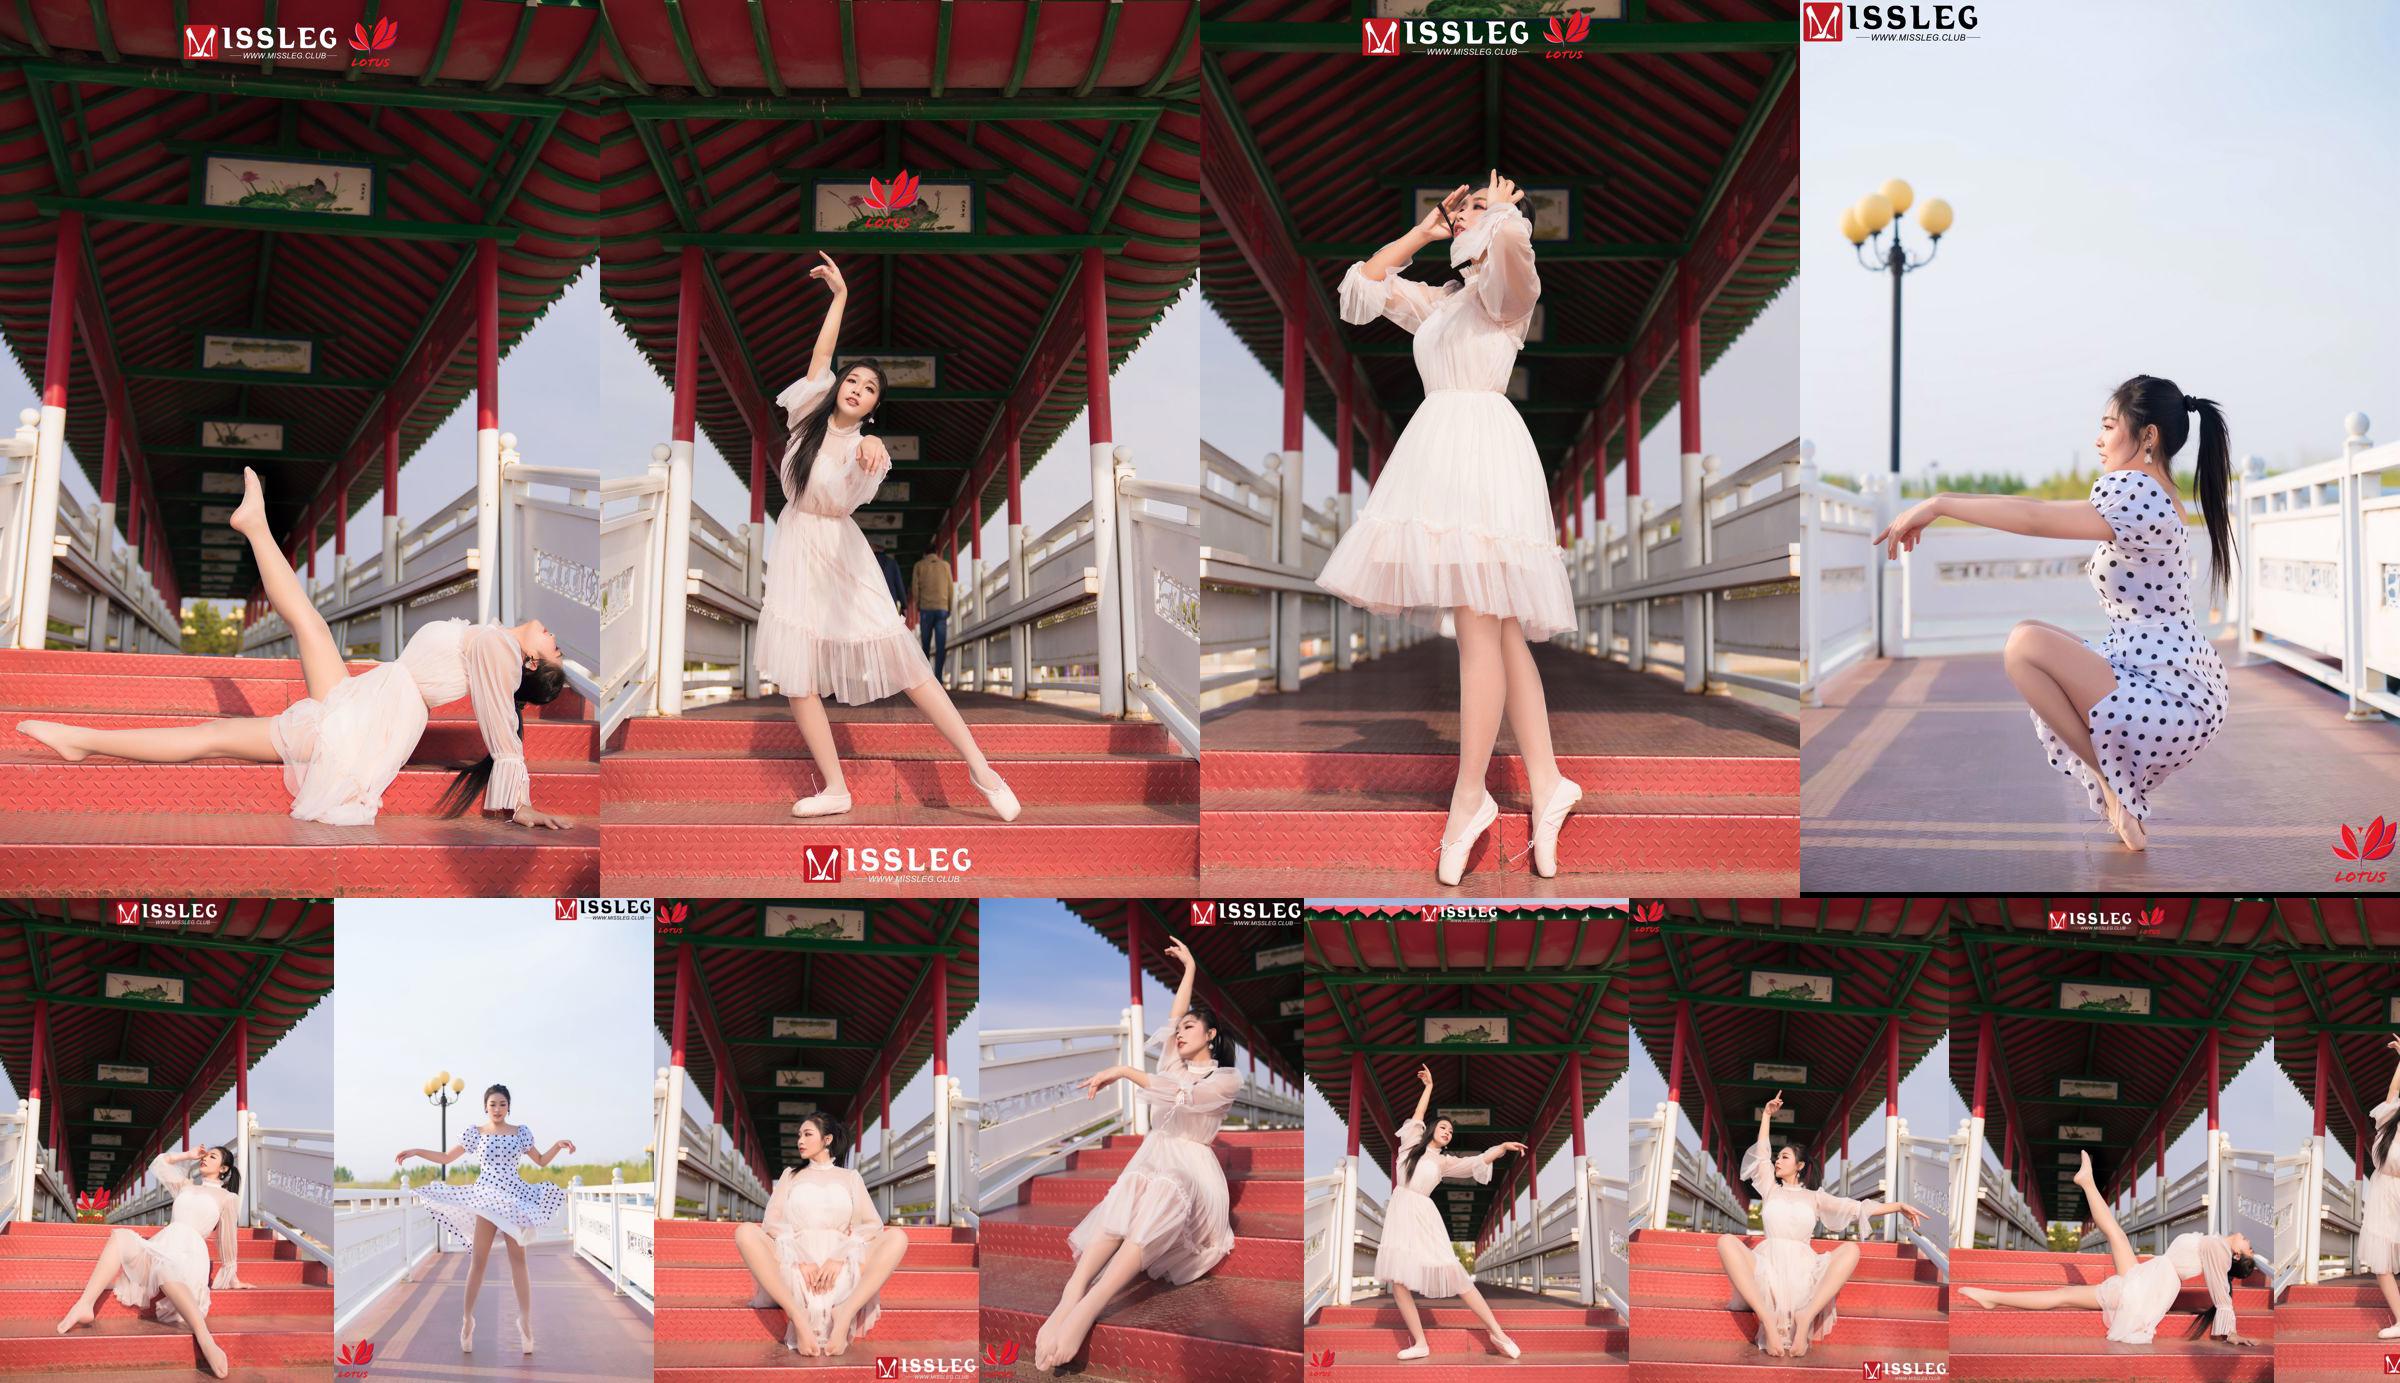 [蜜 丝 MISSLEG] M018 Imp 3 "Scenic Dancer" No.1c32fe Page 28